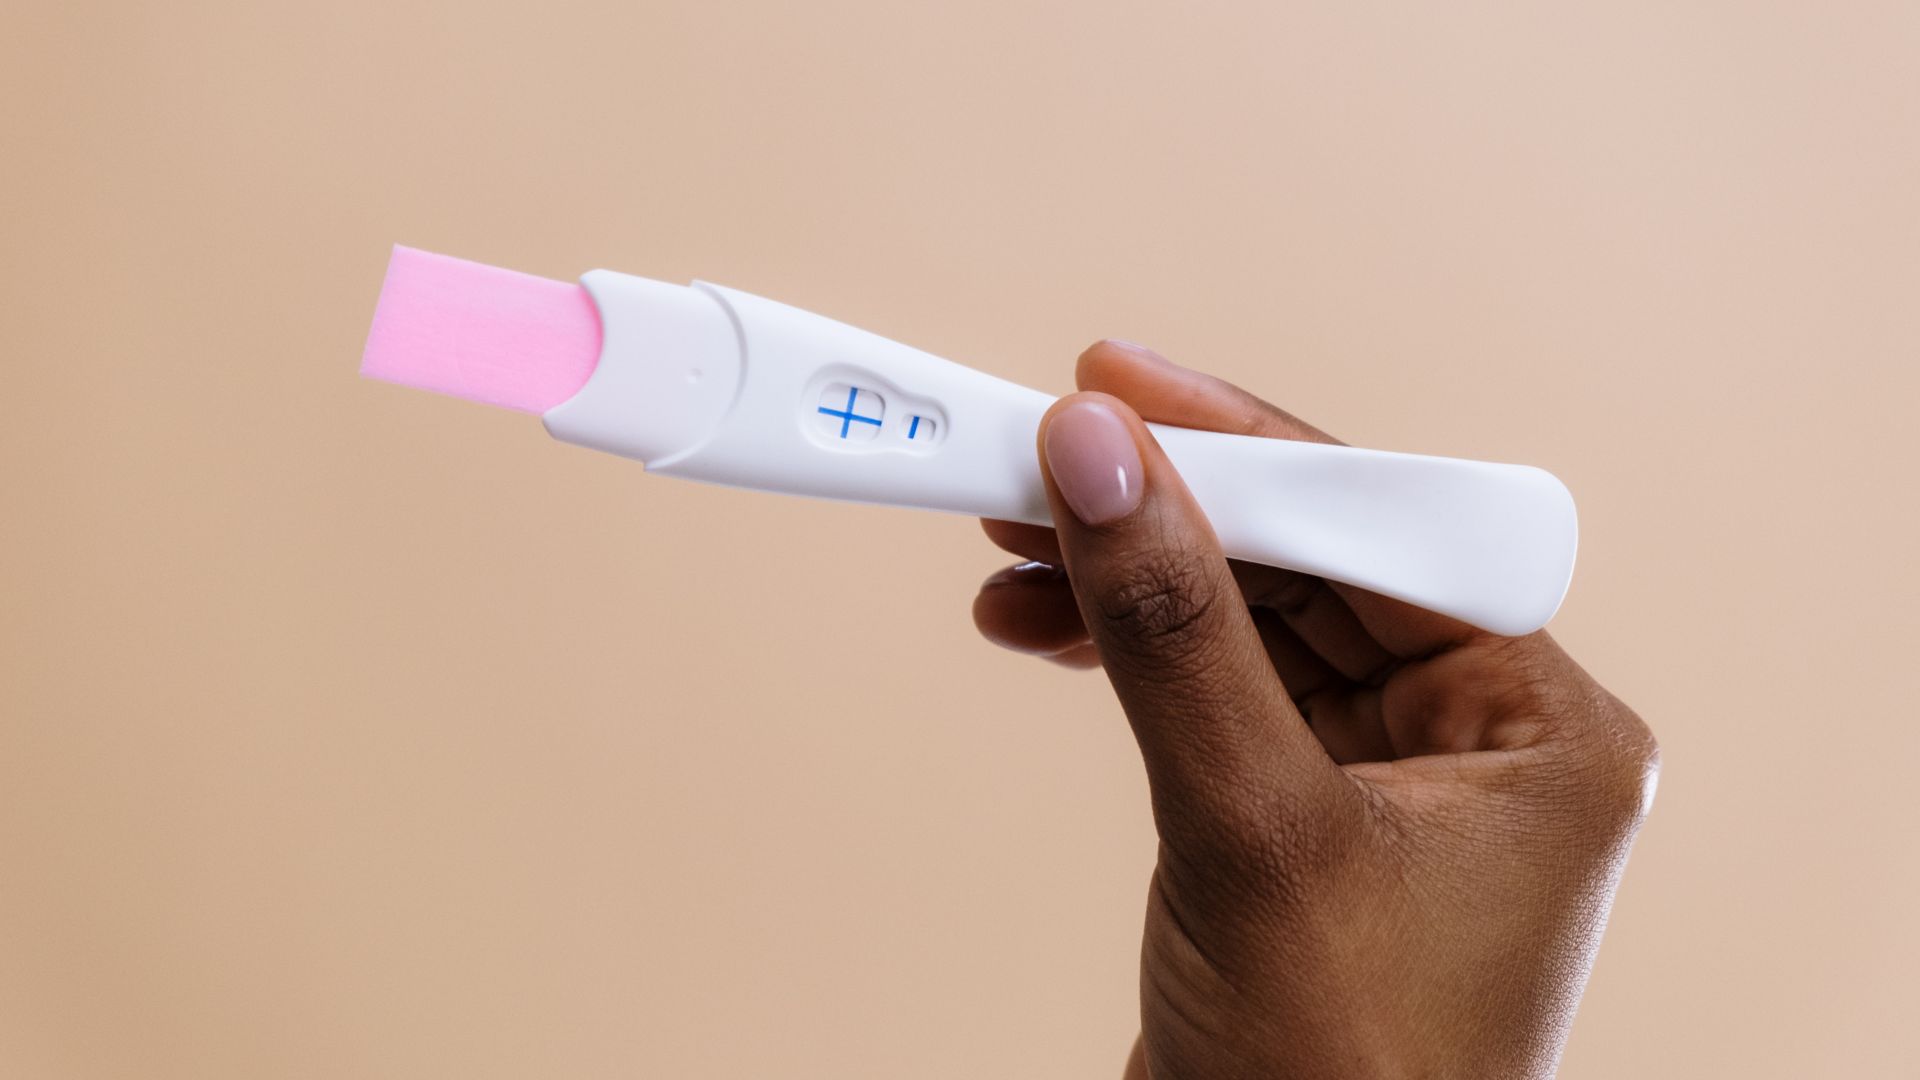 Test de grossesse urinaire : peut-il se tromper ? - Madmoizelle